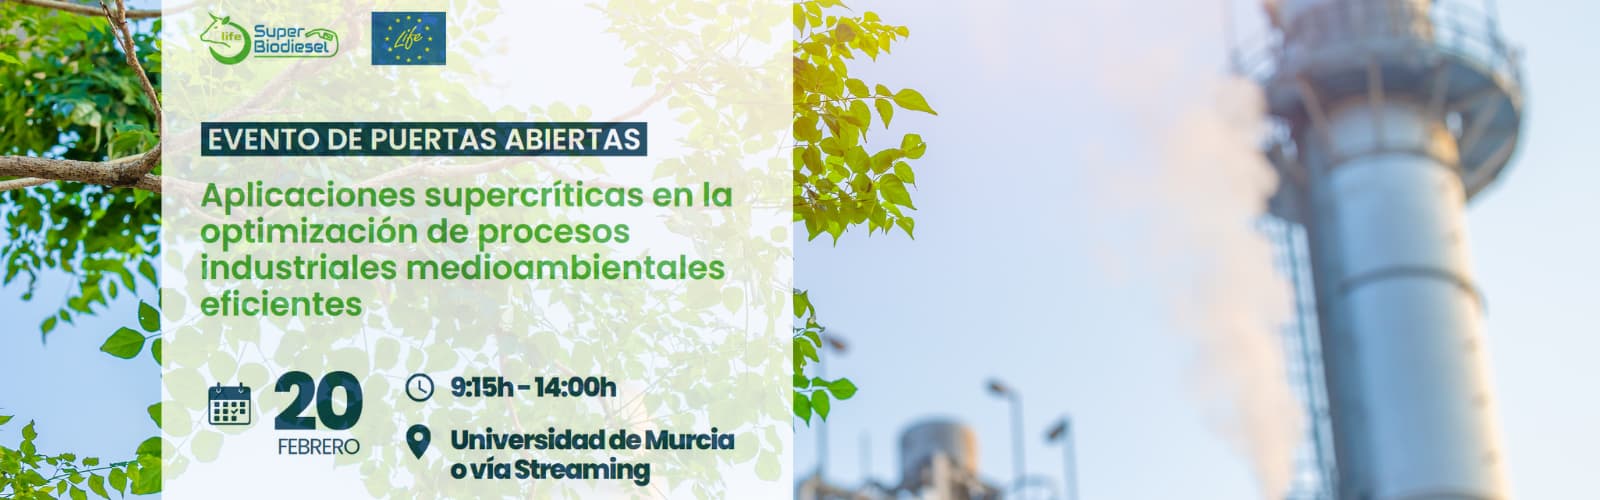 Joaquín Quesada participa en un evento de puertas abiertas con un proyecto que mejora la eficiencia medioambiental en la producción y refino de biocombustibles